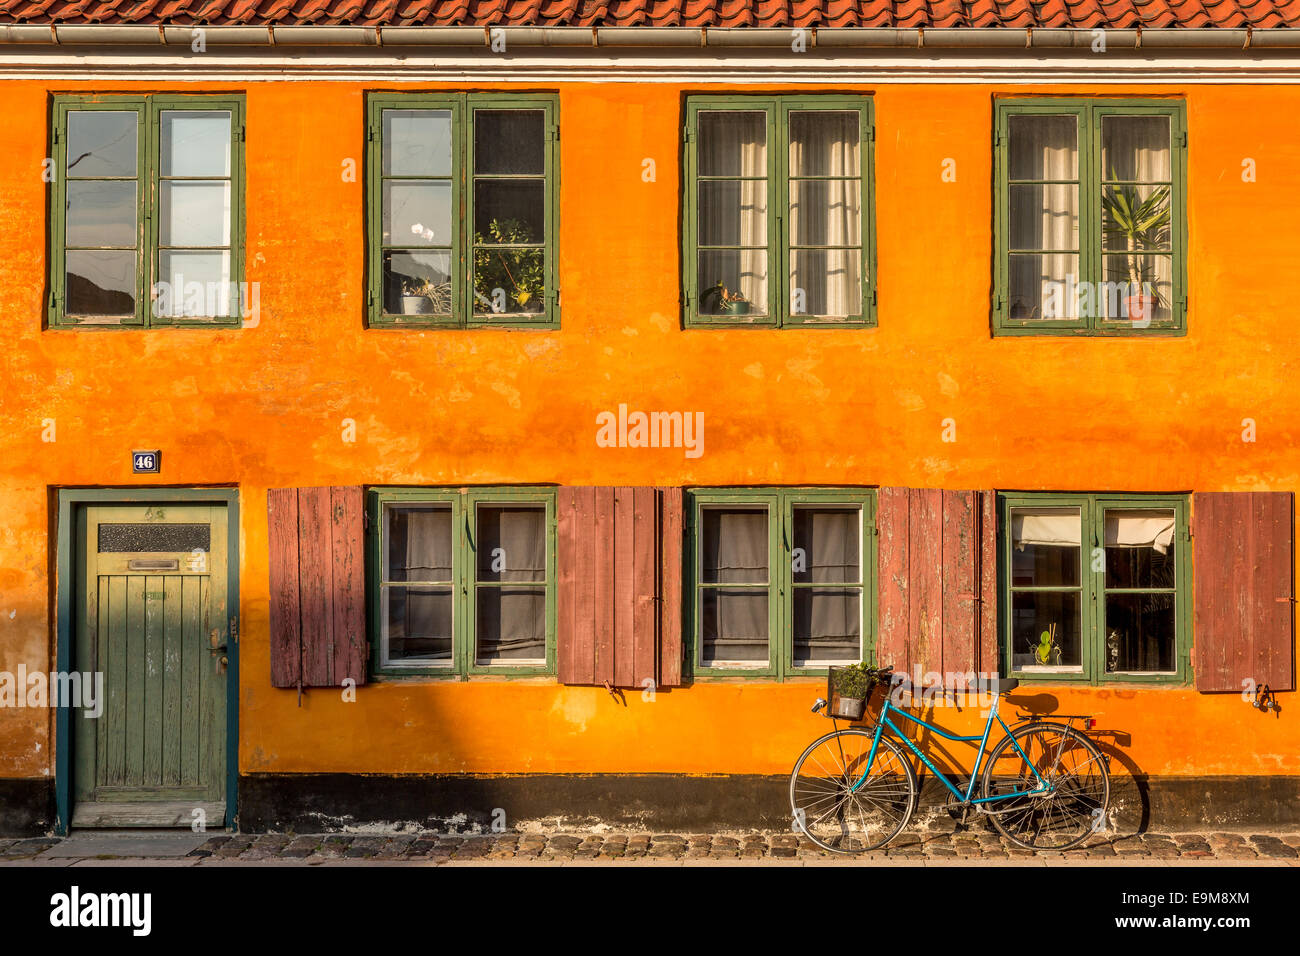 La classe ouvrière historique housing estate, Nyboder, Copenhague, Danemark Banque D'Images